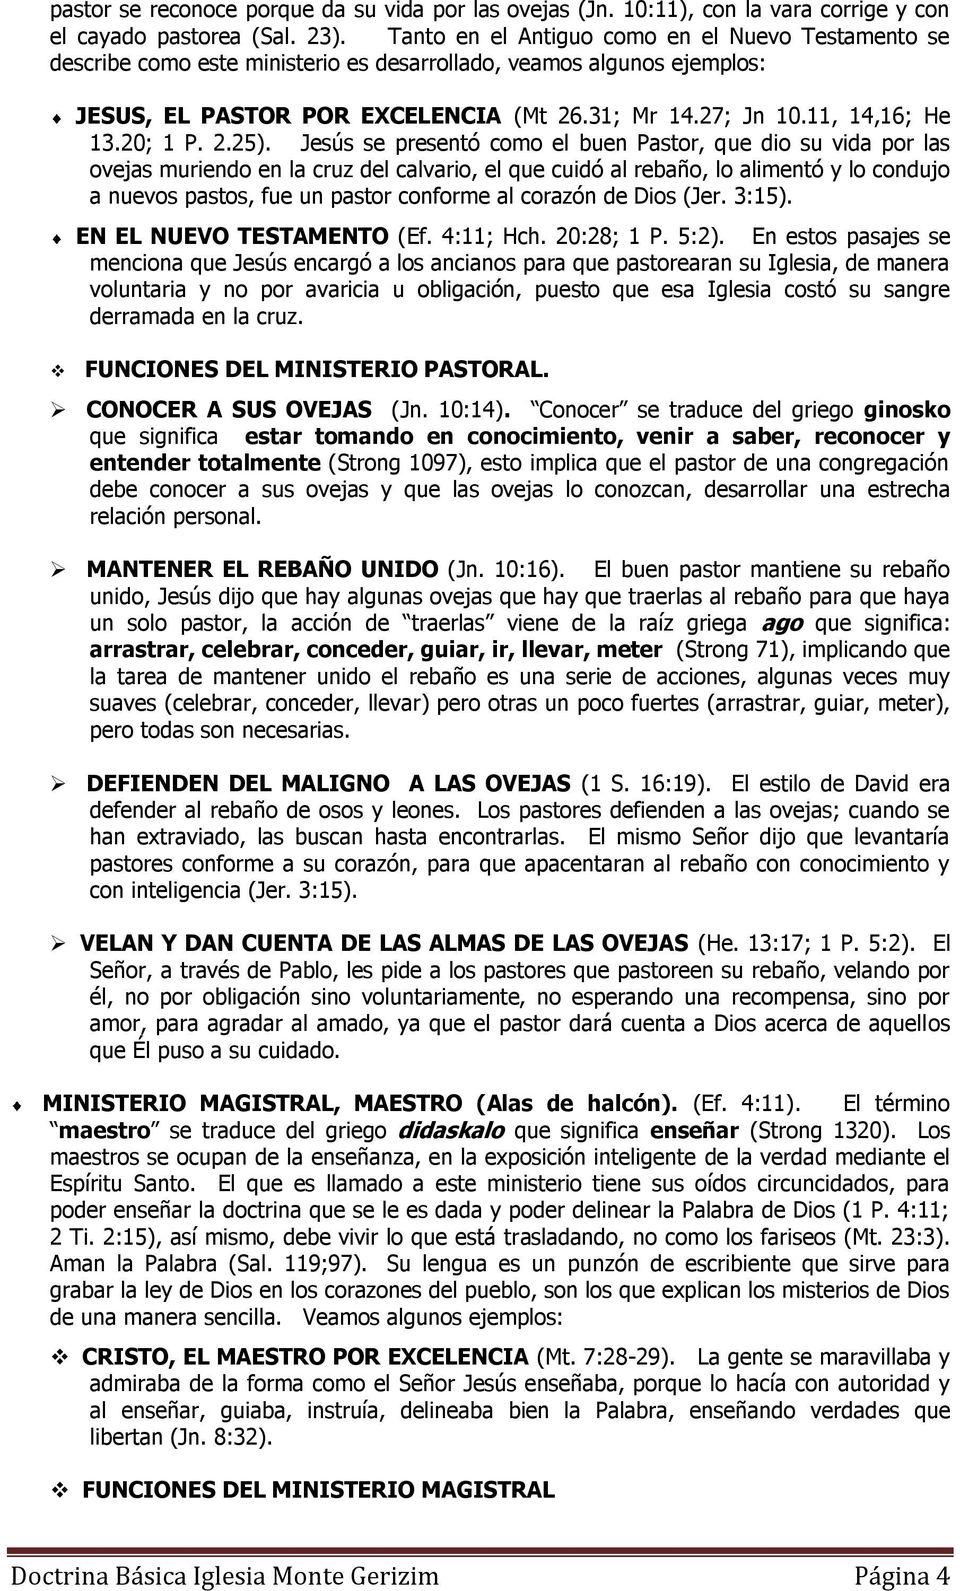 LOS CINCO MINISTERIOS - PDF Descargar libre